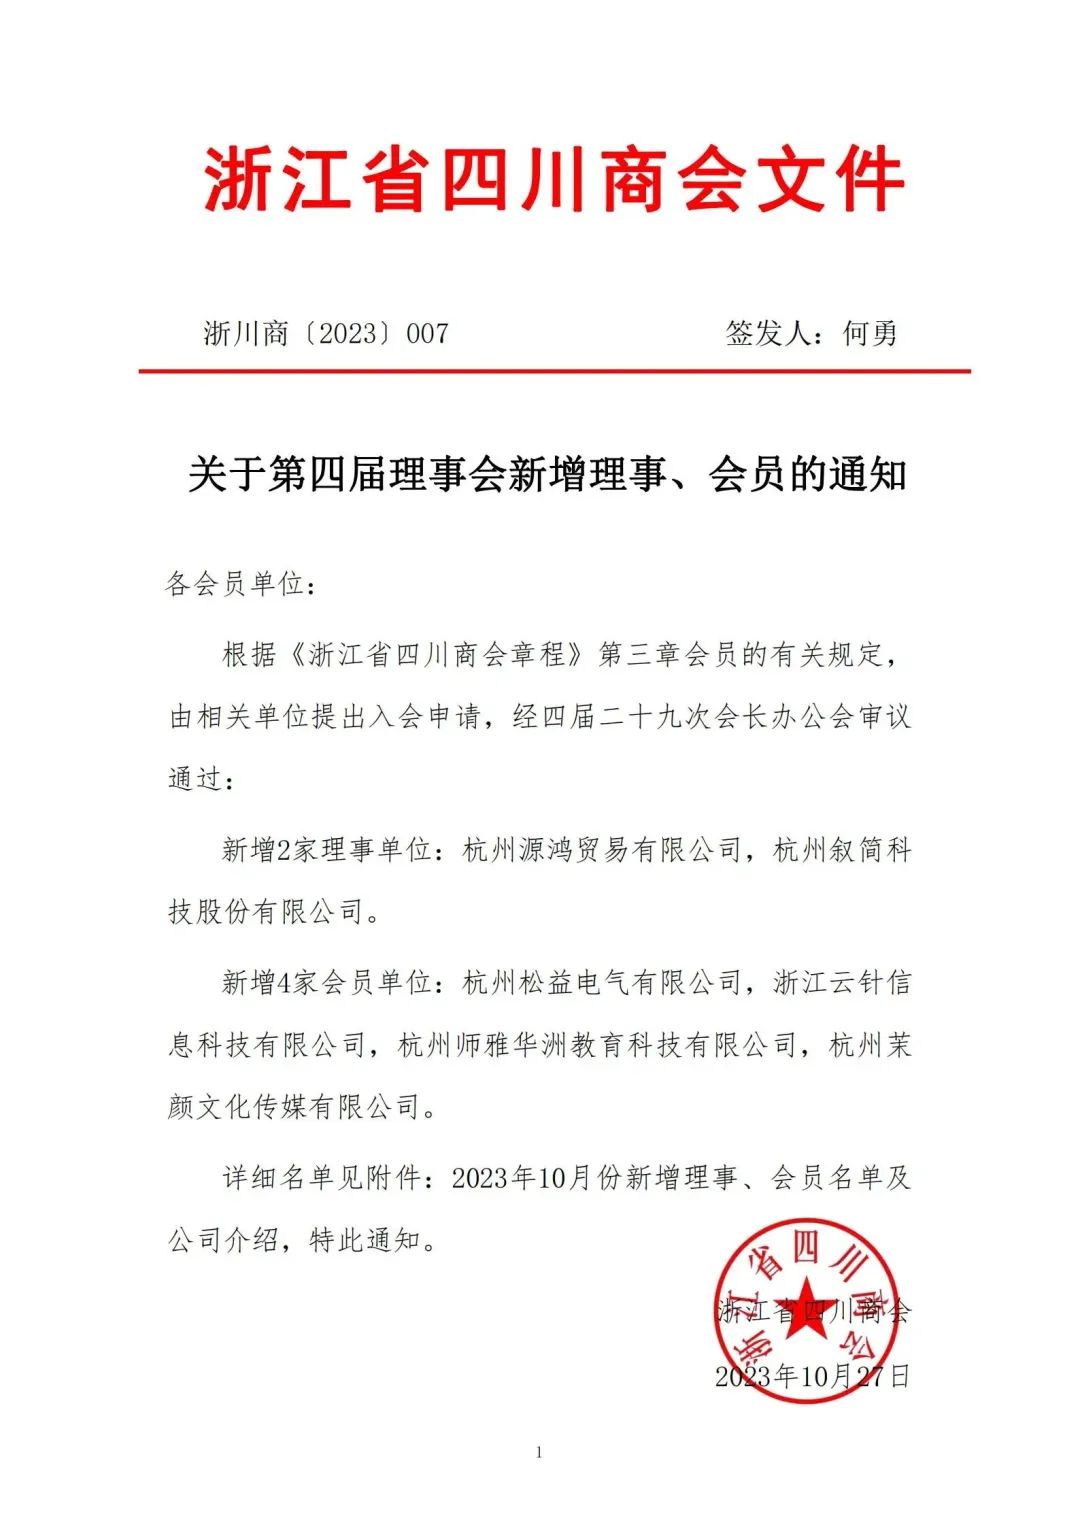 【公告】浙江省四川商会2023年10月新晋会员风采展示